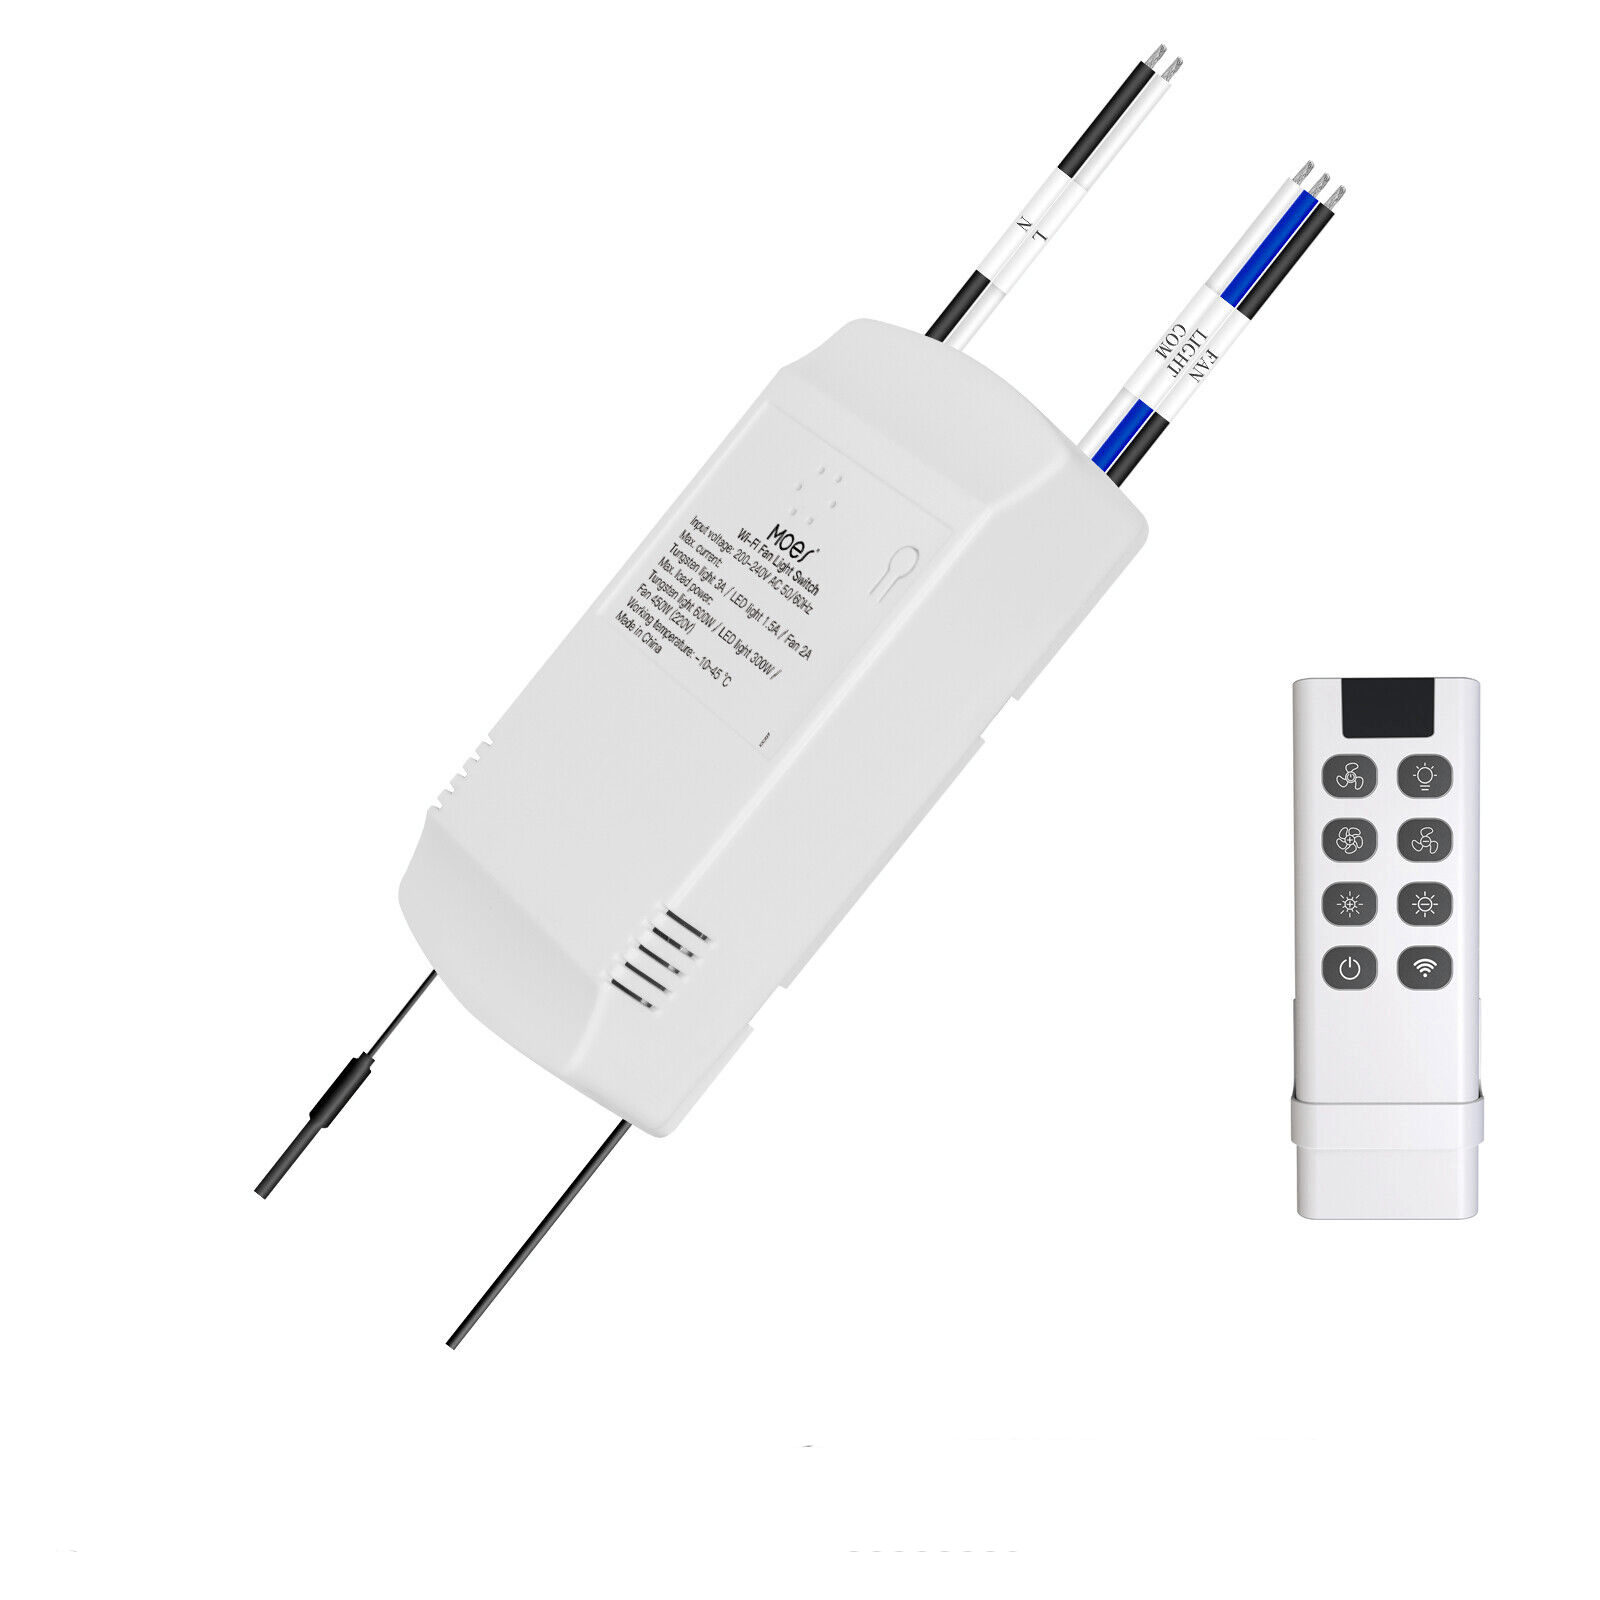 OEM] WiFi + RF433 Smart Switch Wireless Remote Control Light